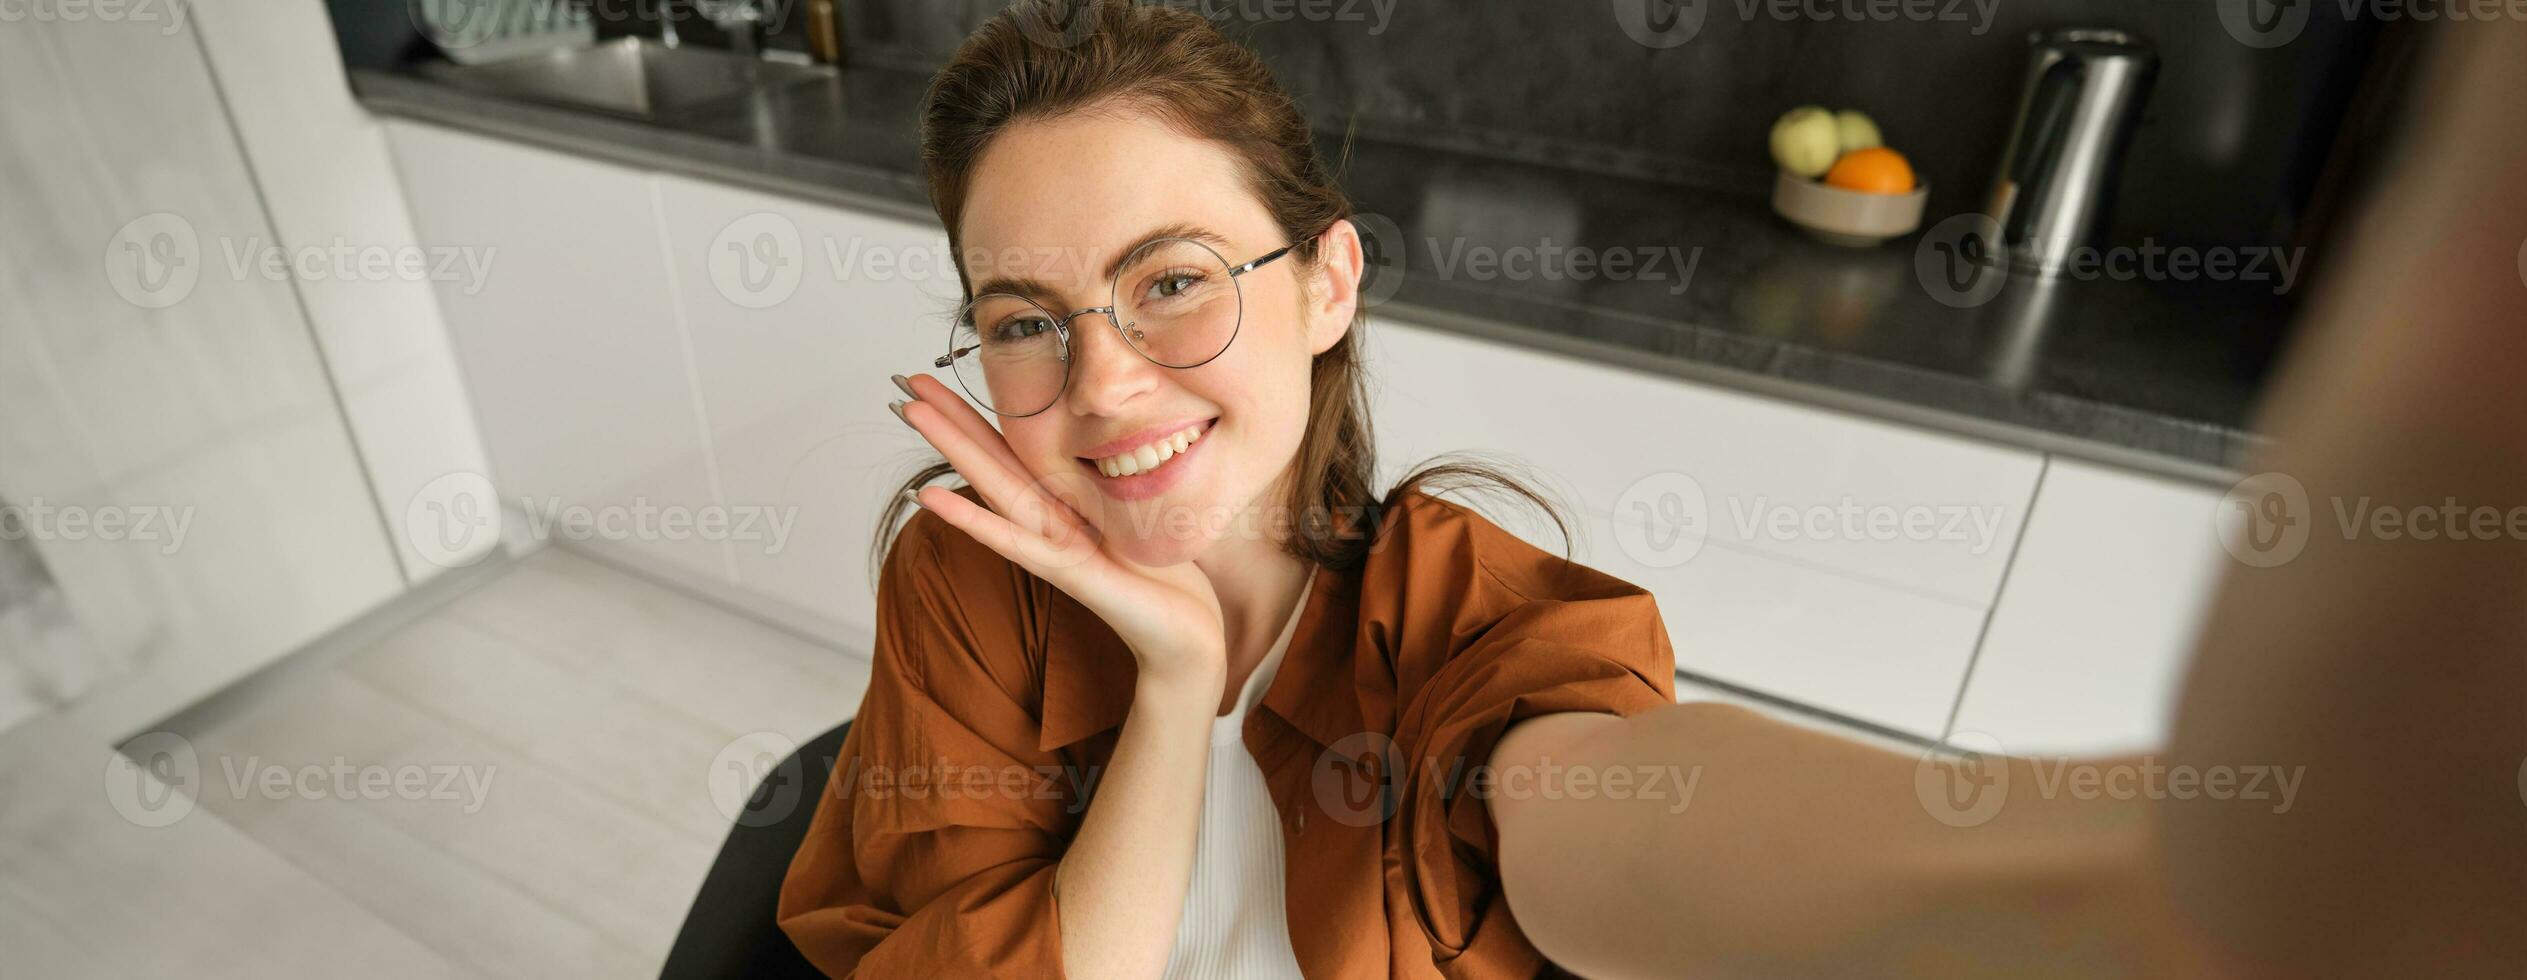 selfie av Lycklig ung och sorglös kvinna, tar Foto på mobil telefon med utökad hand, Framställ och leende, Sammanträde i kök i glasögon